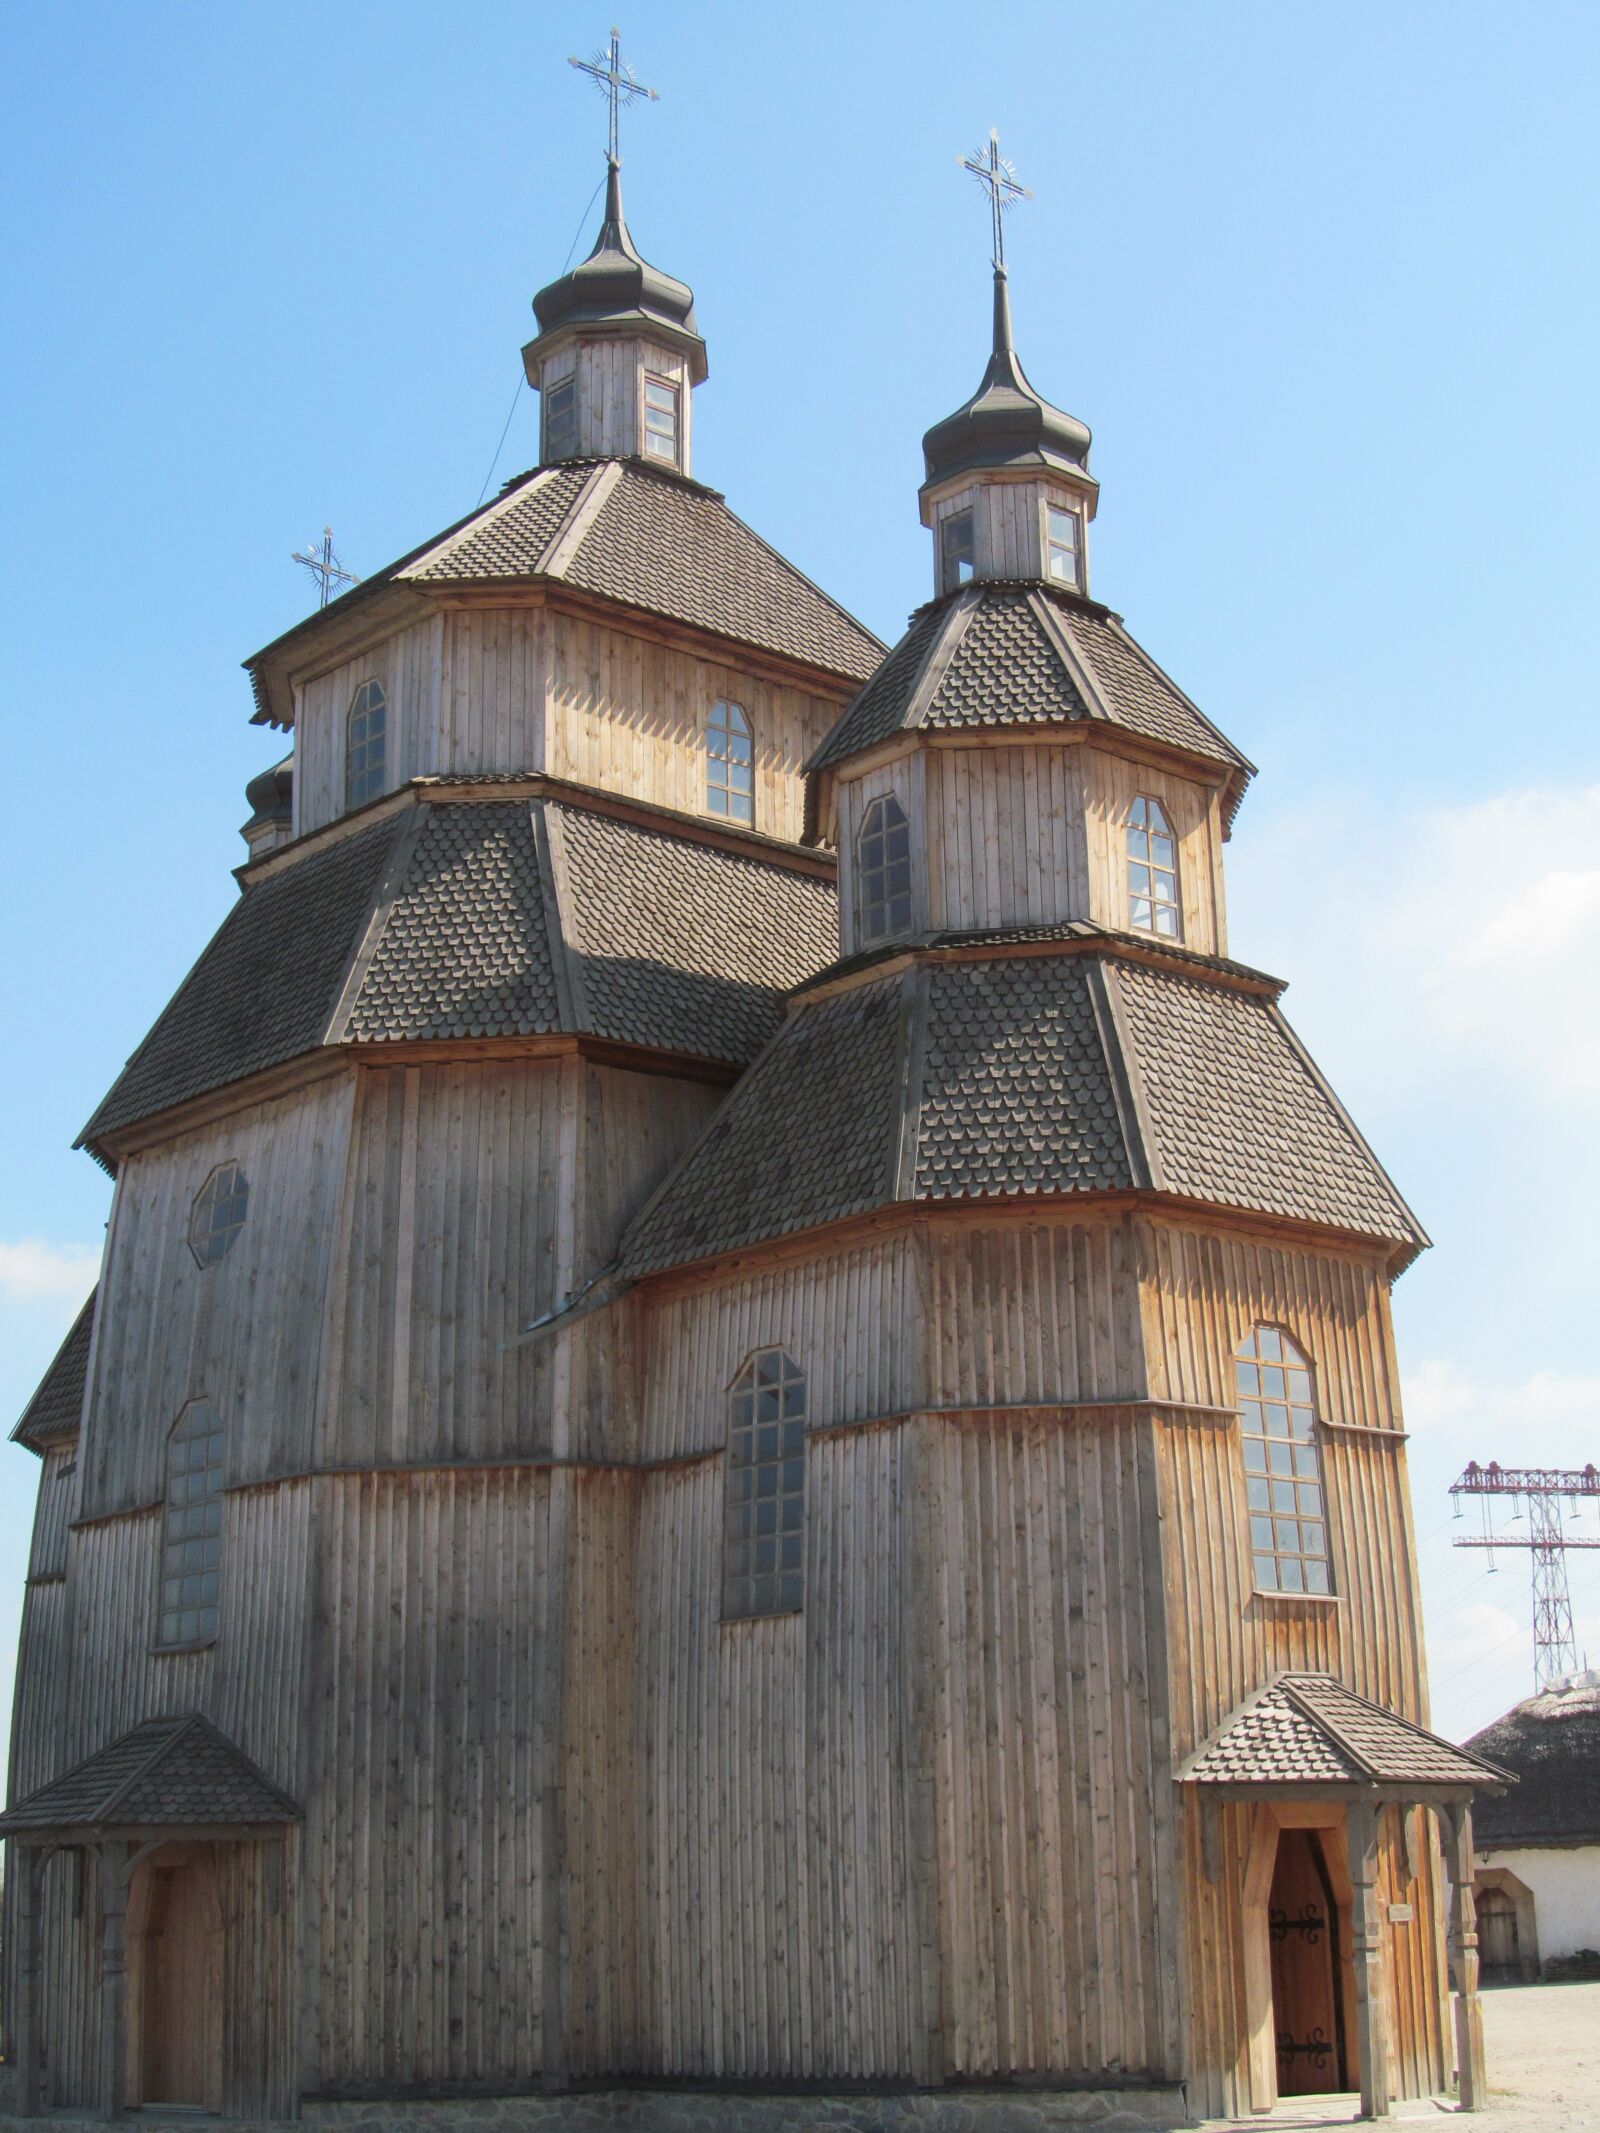 Canon PowerShot SX150 IS sample photo. Khortytsya, zaporozhye, wooden church photography